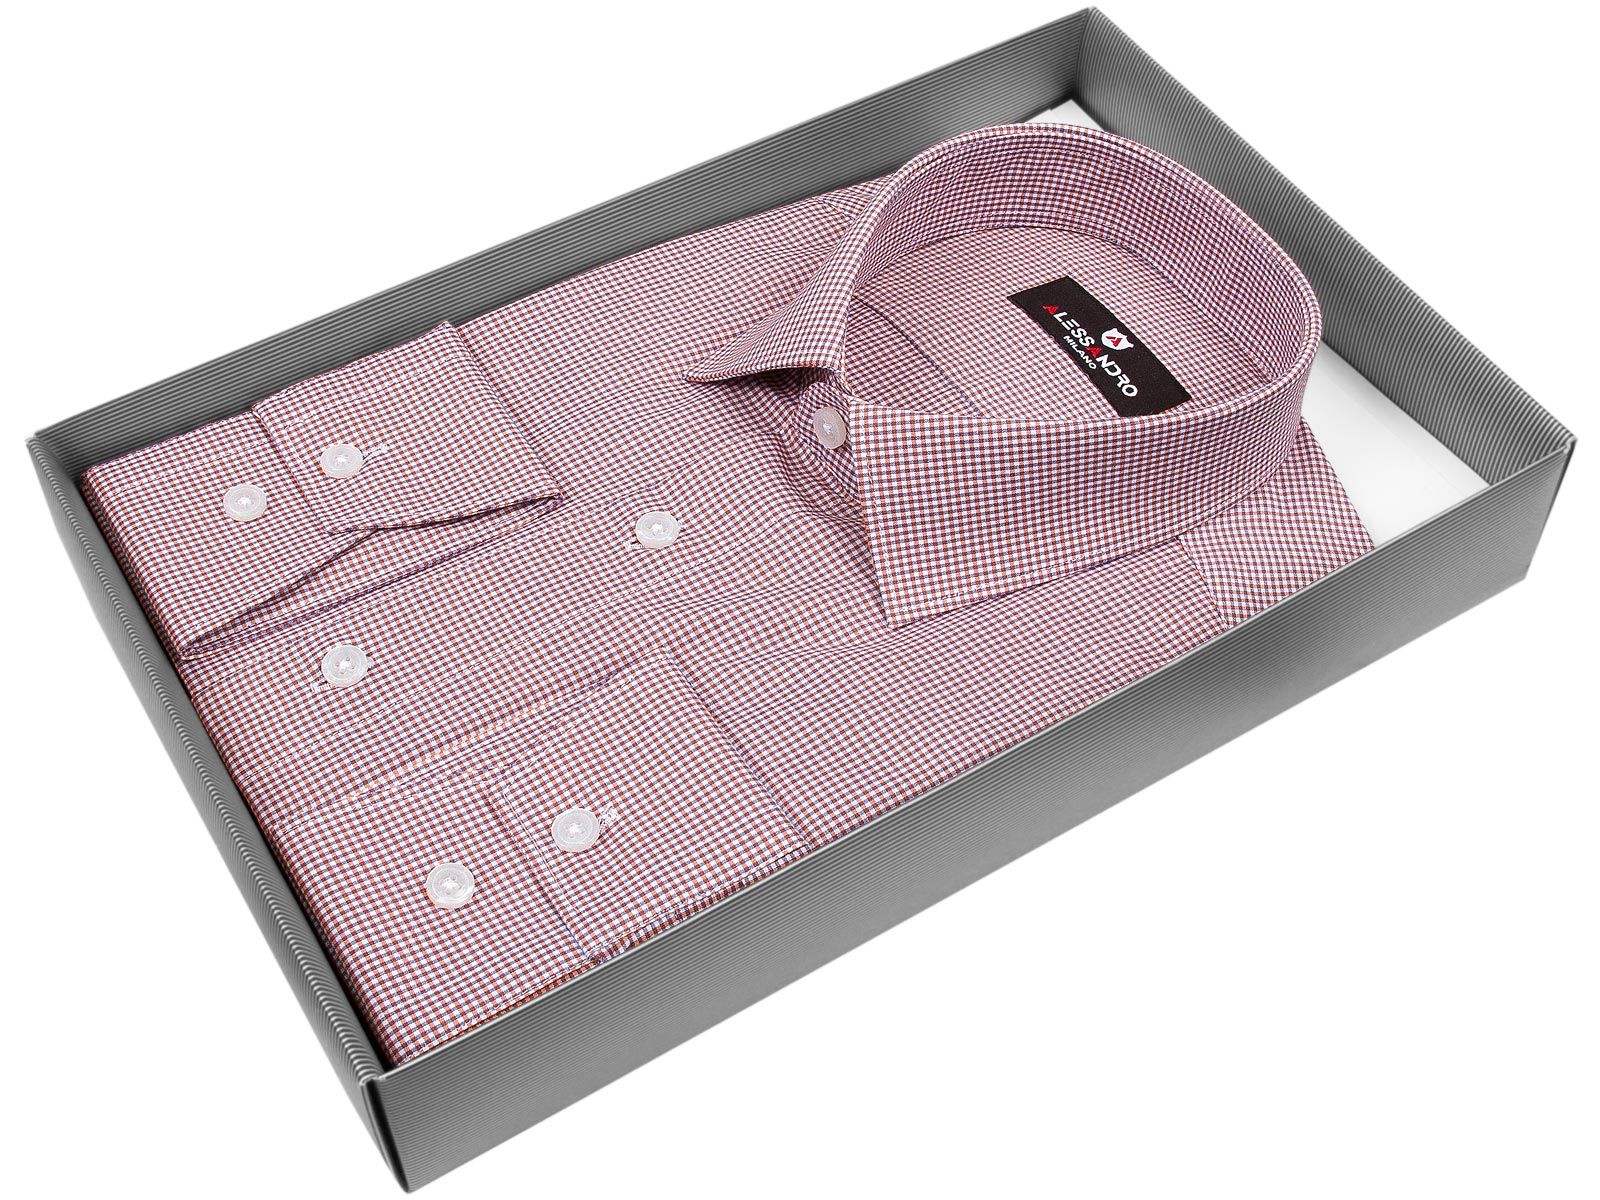 Мужская рубашка Alessandro Milano приталенный цвет бледно-бордовый в клетку купить в Москве недорого